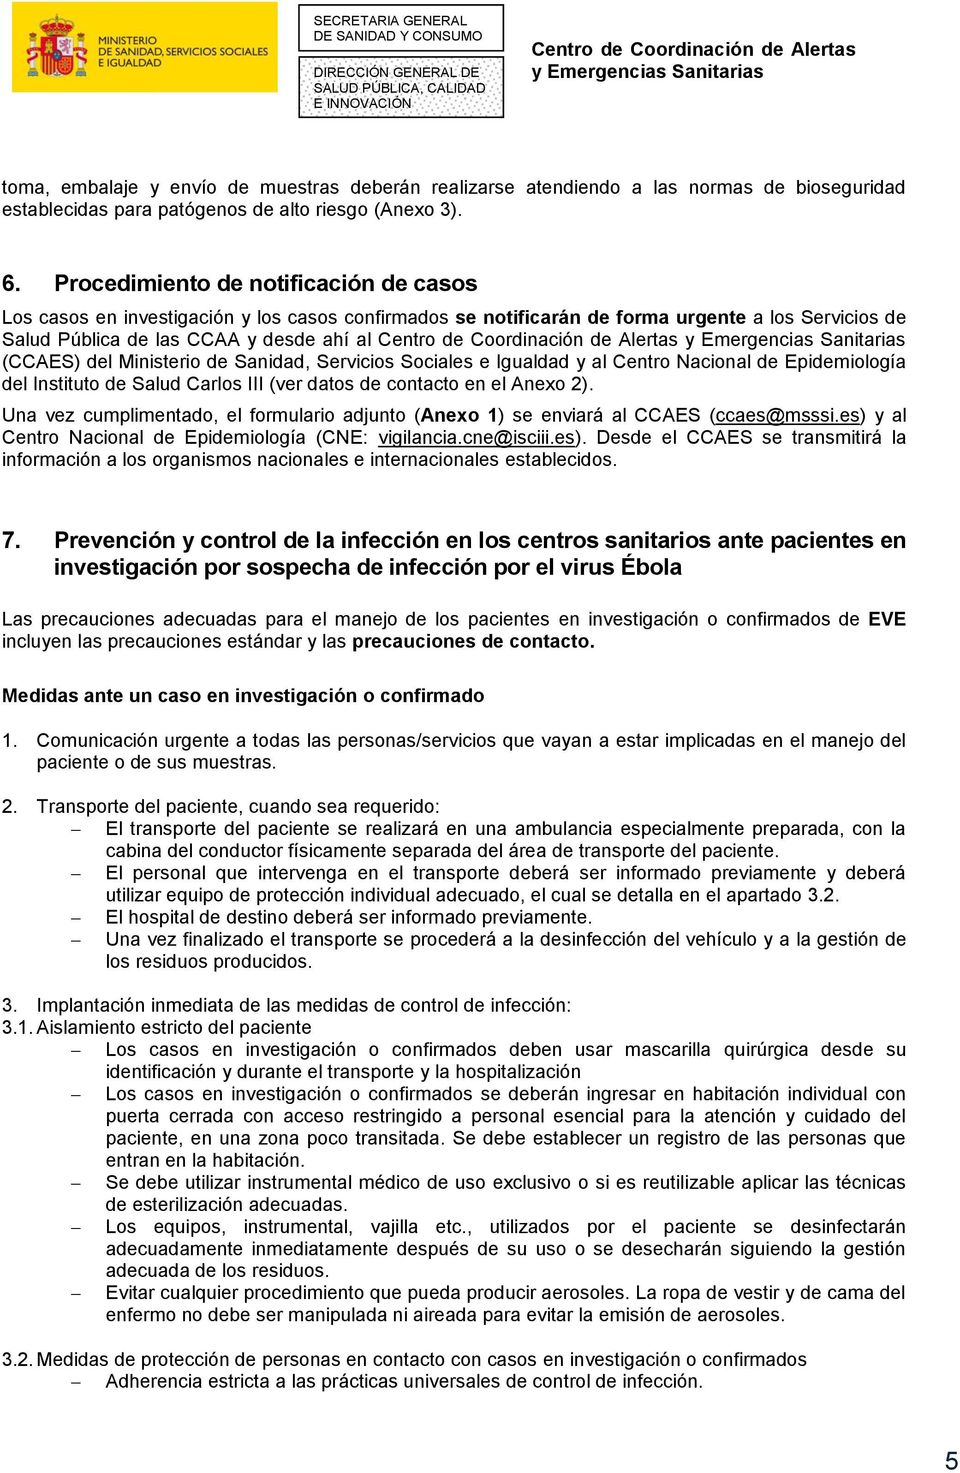 Ministerio de Sanidad, Servicios Sociales e Igualdad y al Centro Nacional de Epidemiología del Instituto de Salud Carlos III (ver datos de contacto en el Anexo 2).